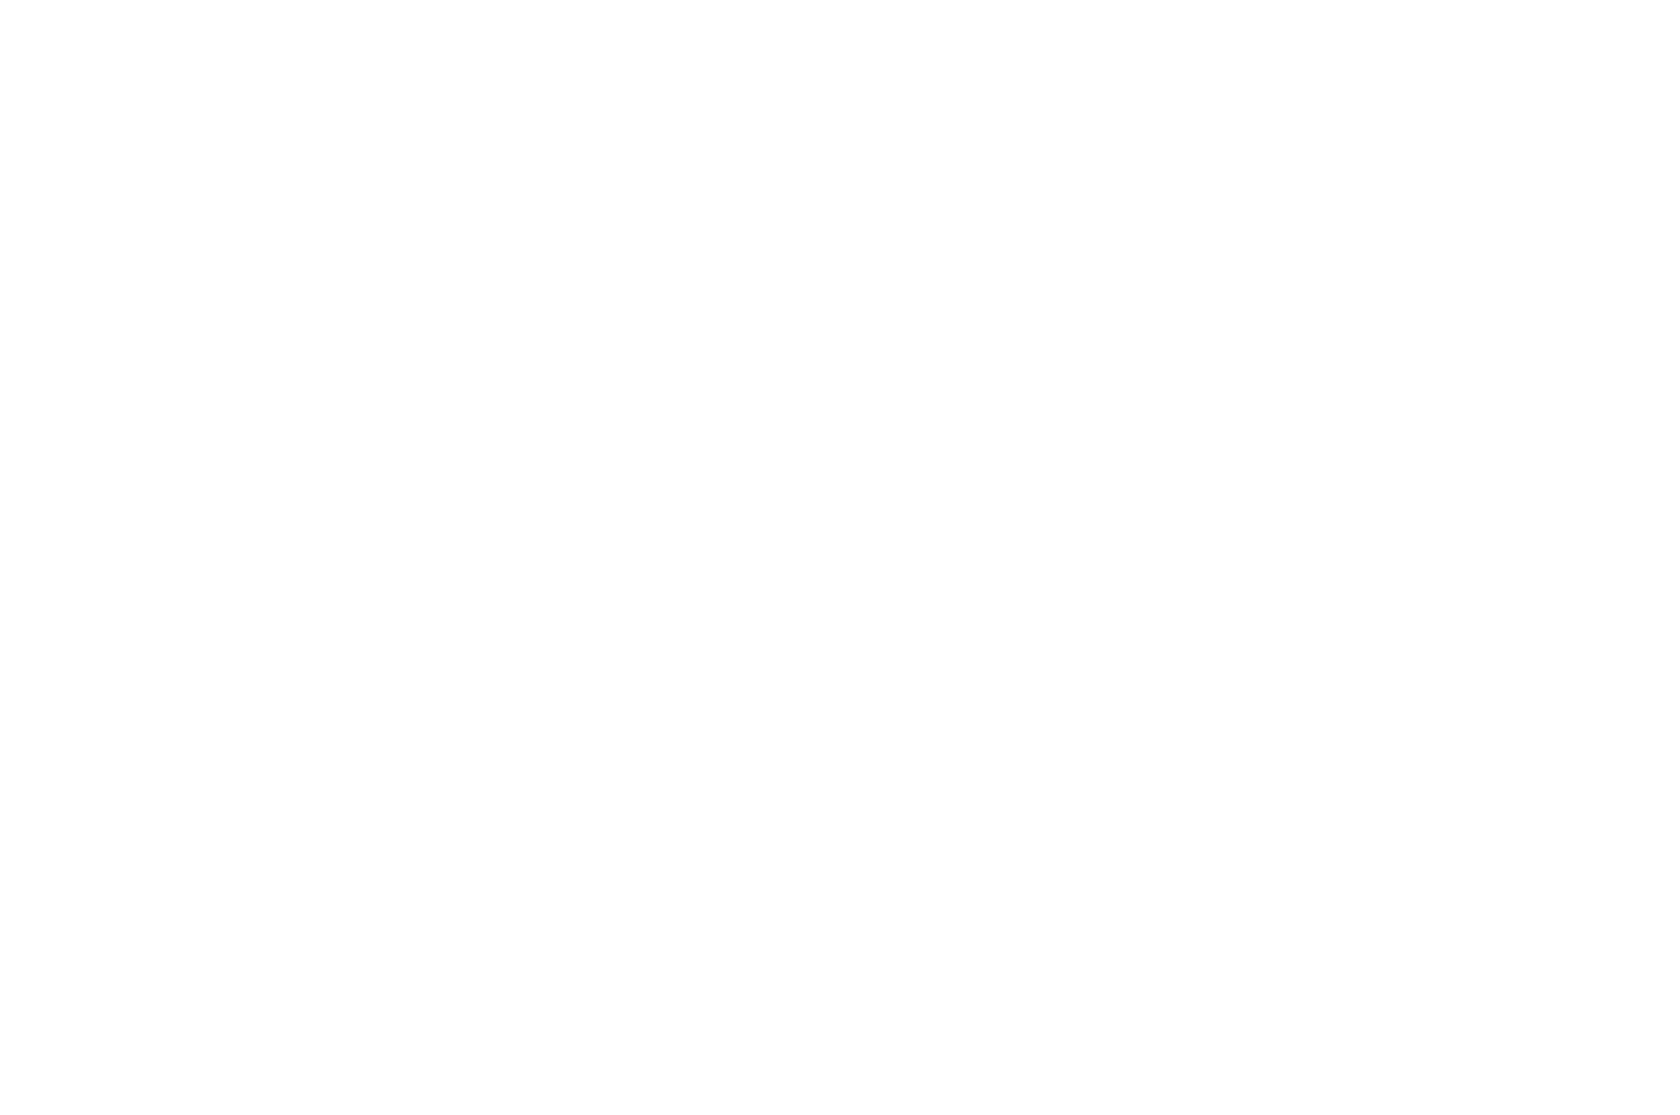 Рестайлинг айдентики Beesender. Примеры использования горизонтального и вертикального вариантов логотипа